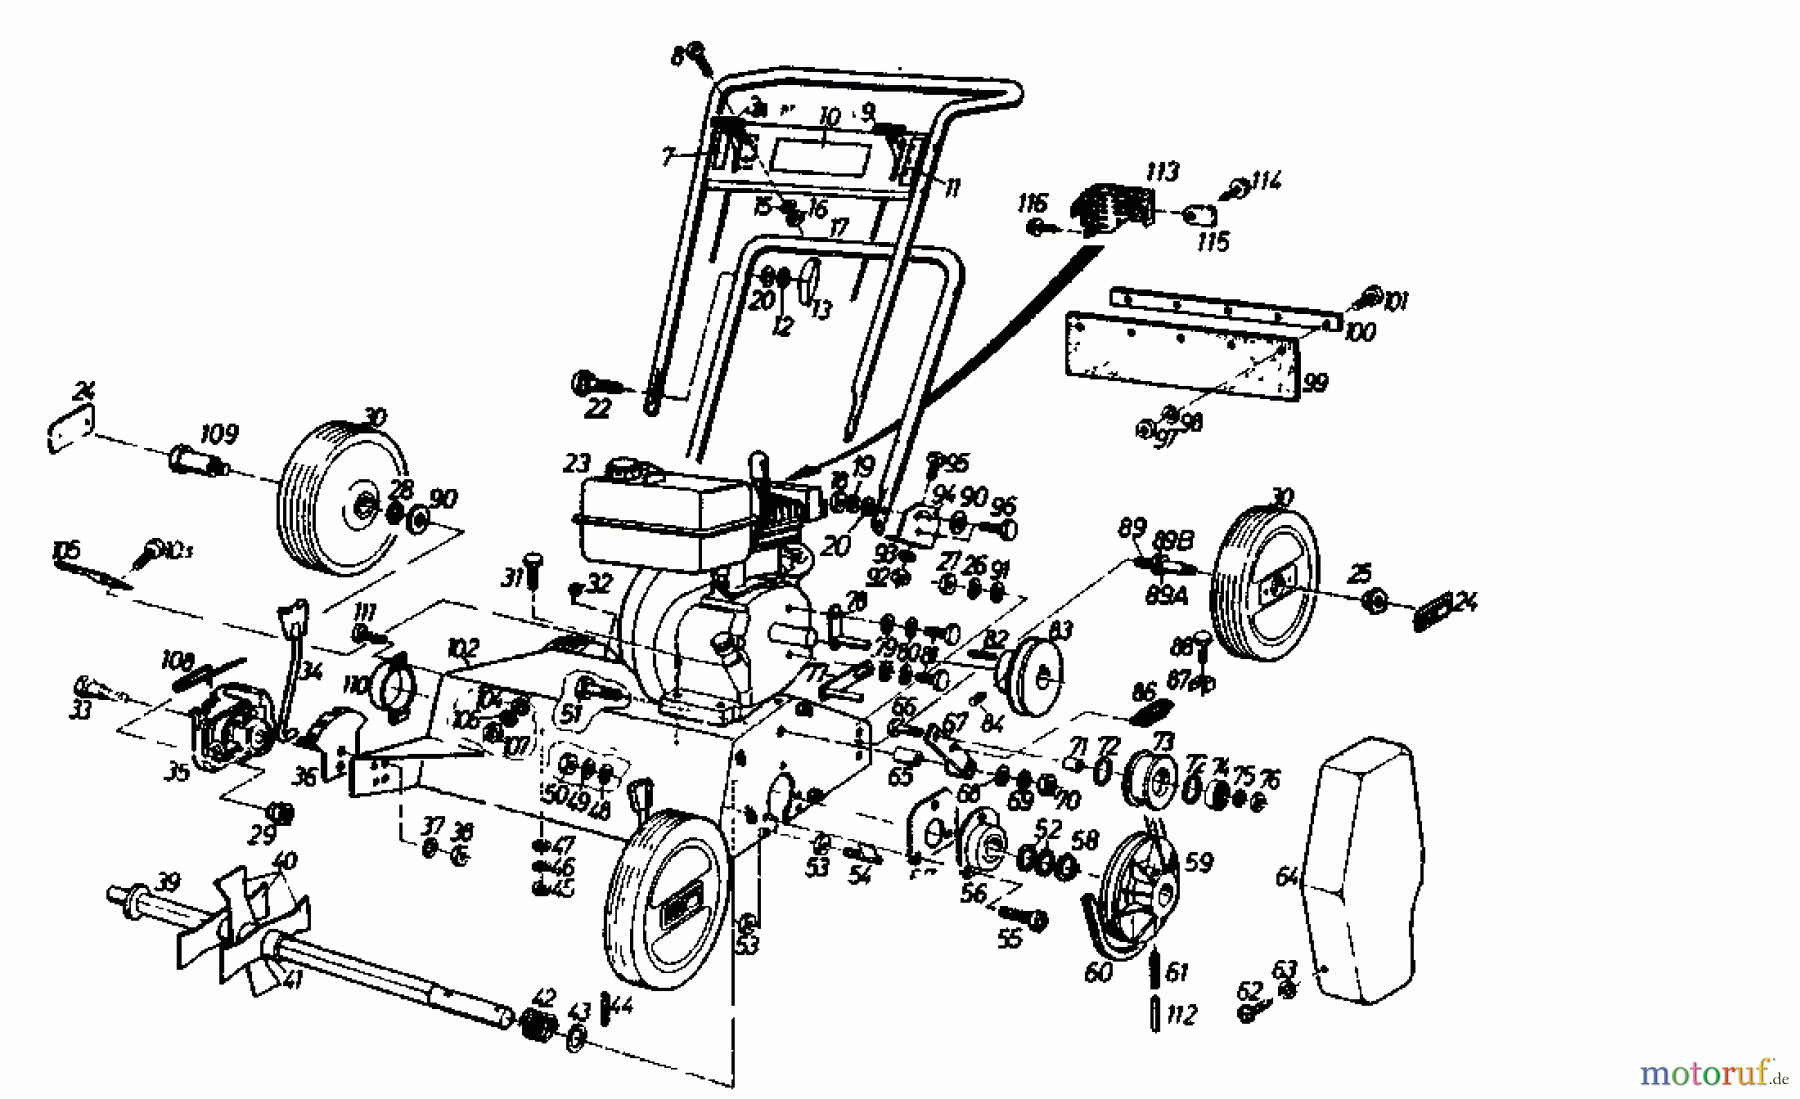  Golf Motorvertikutierer 140 V 4 00054.05  (1989) Grundgerät